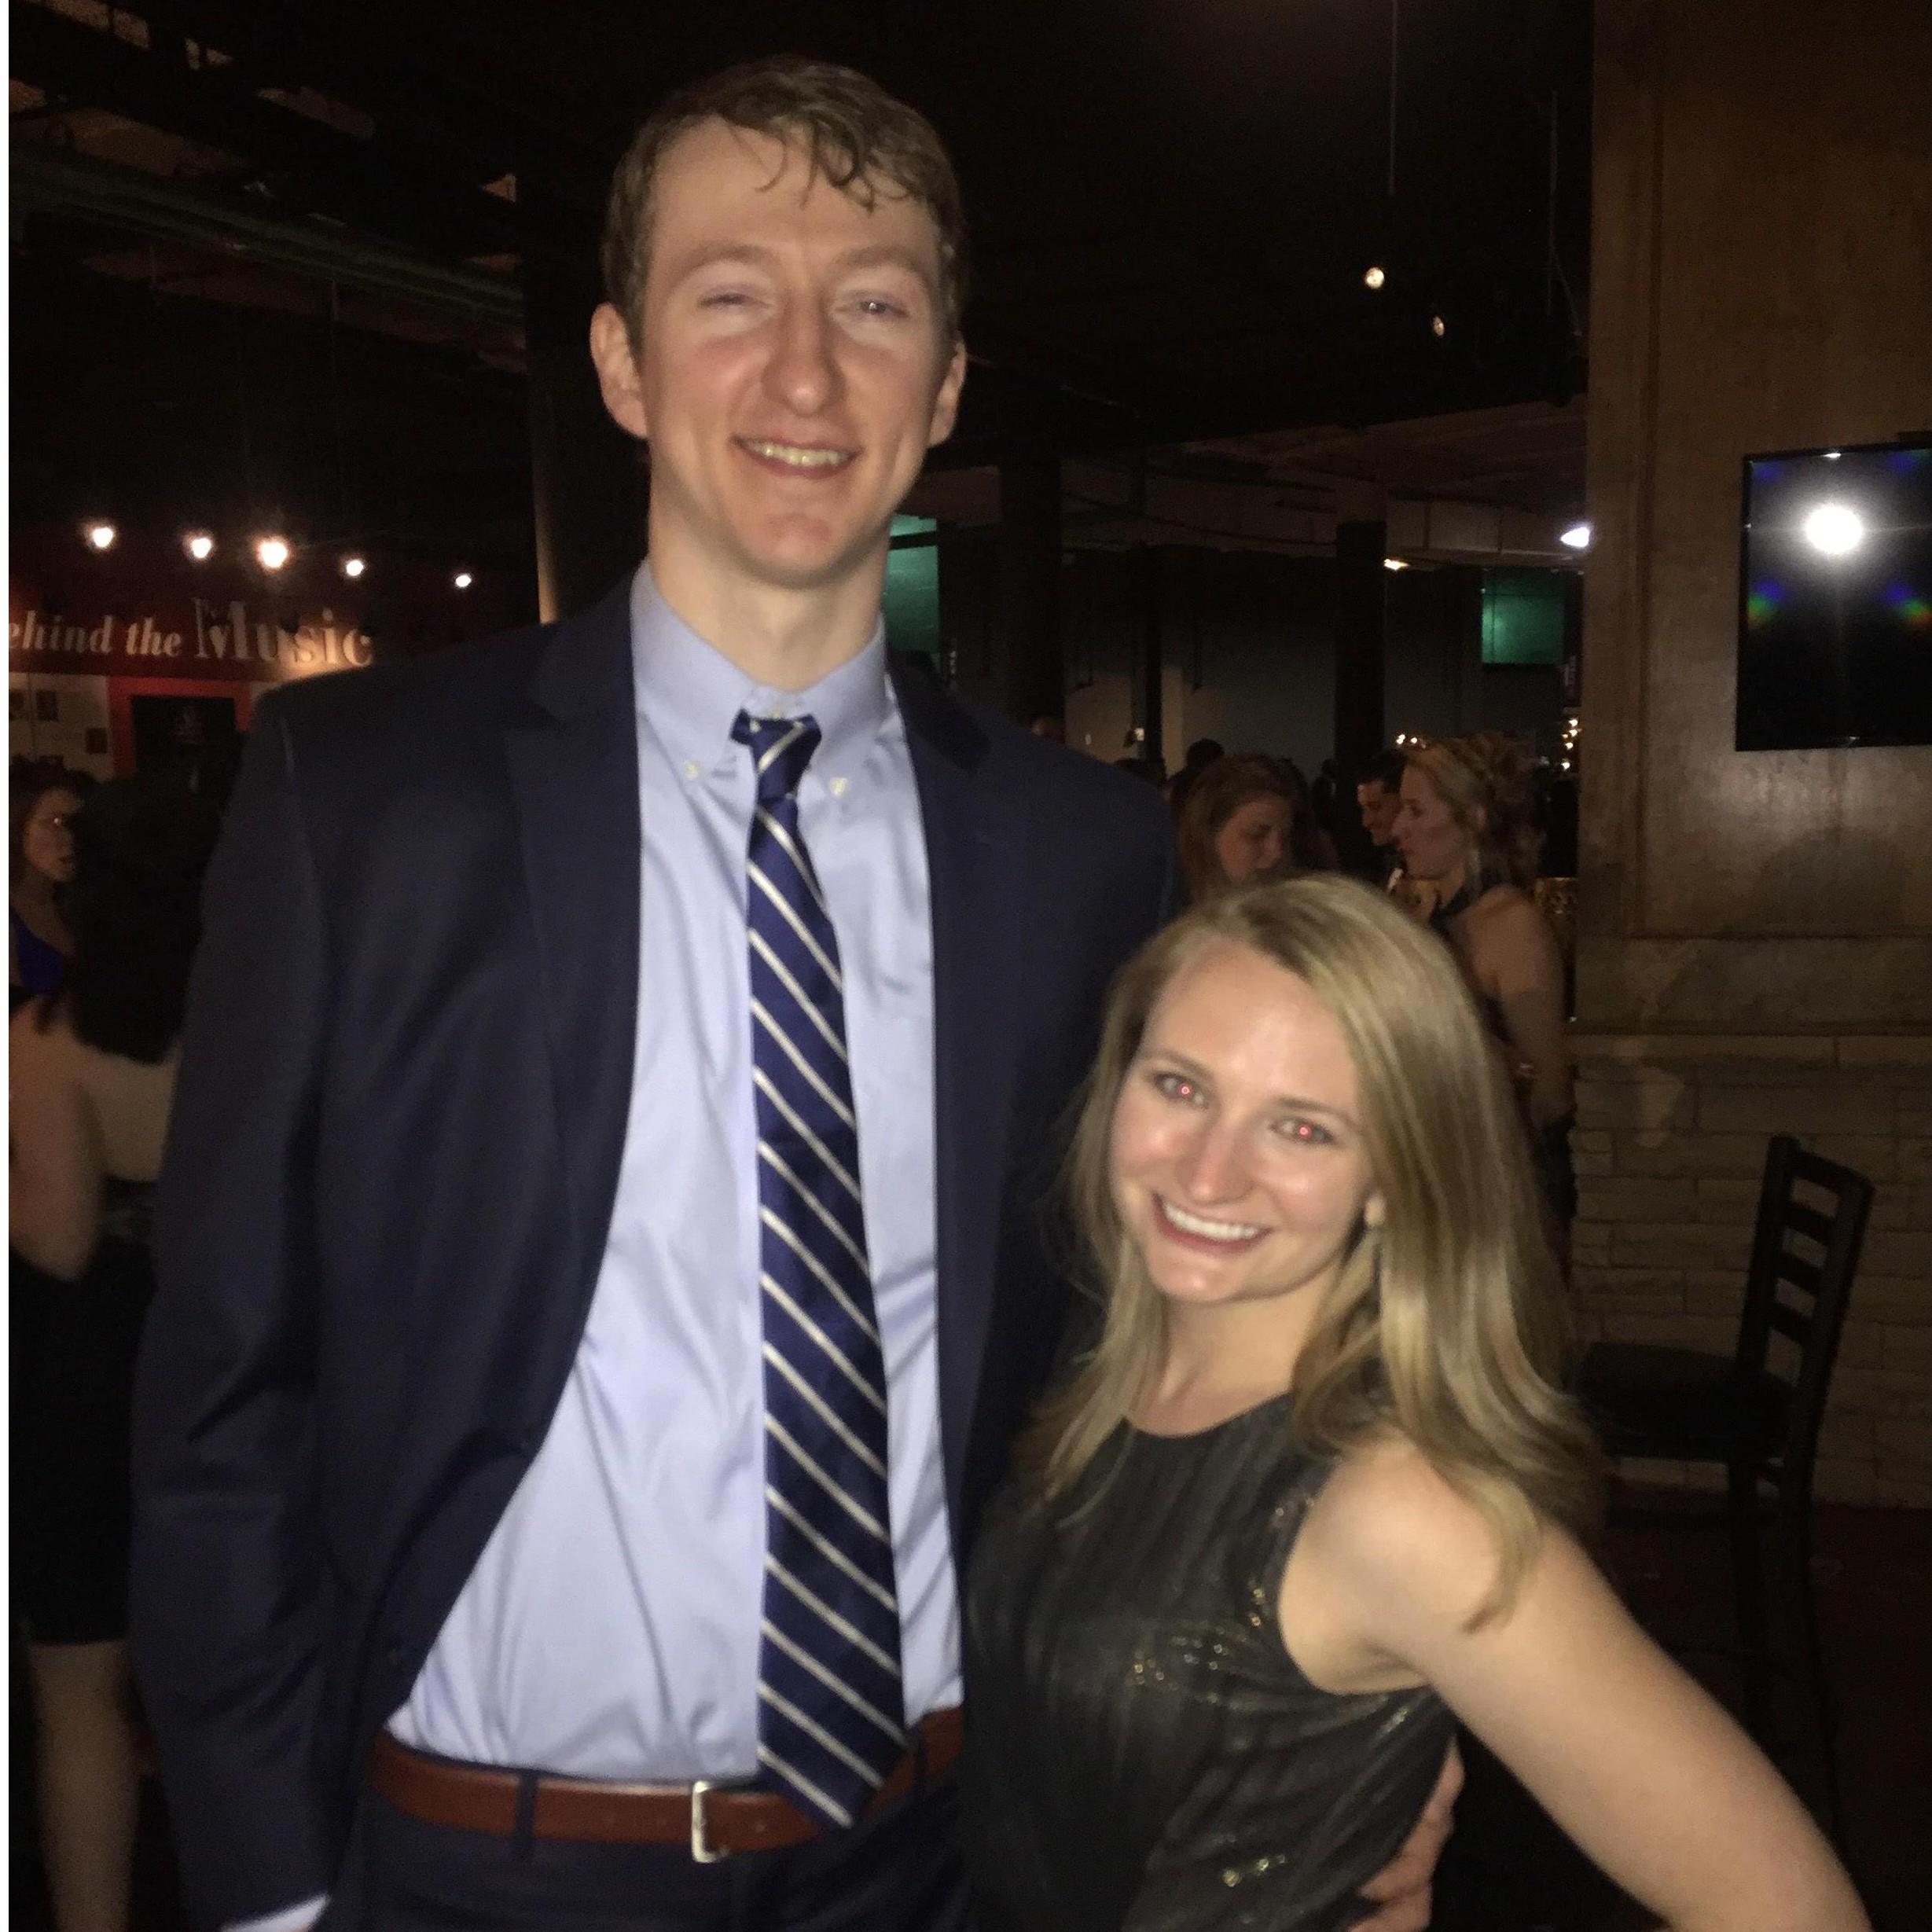 Hannah & Kyle at "Grad school Prom" - Nashville, TN  2017